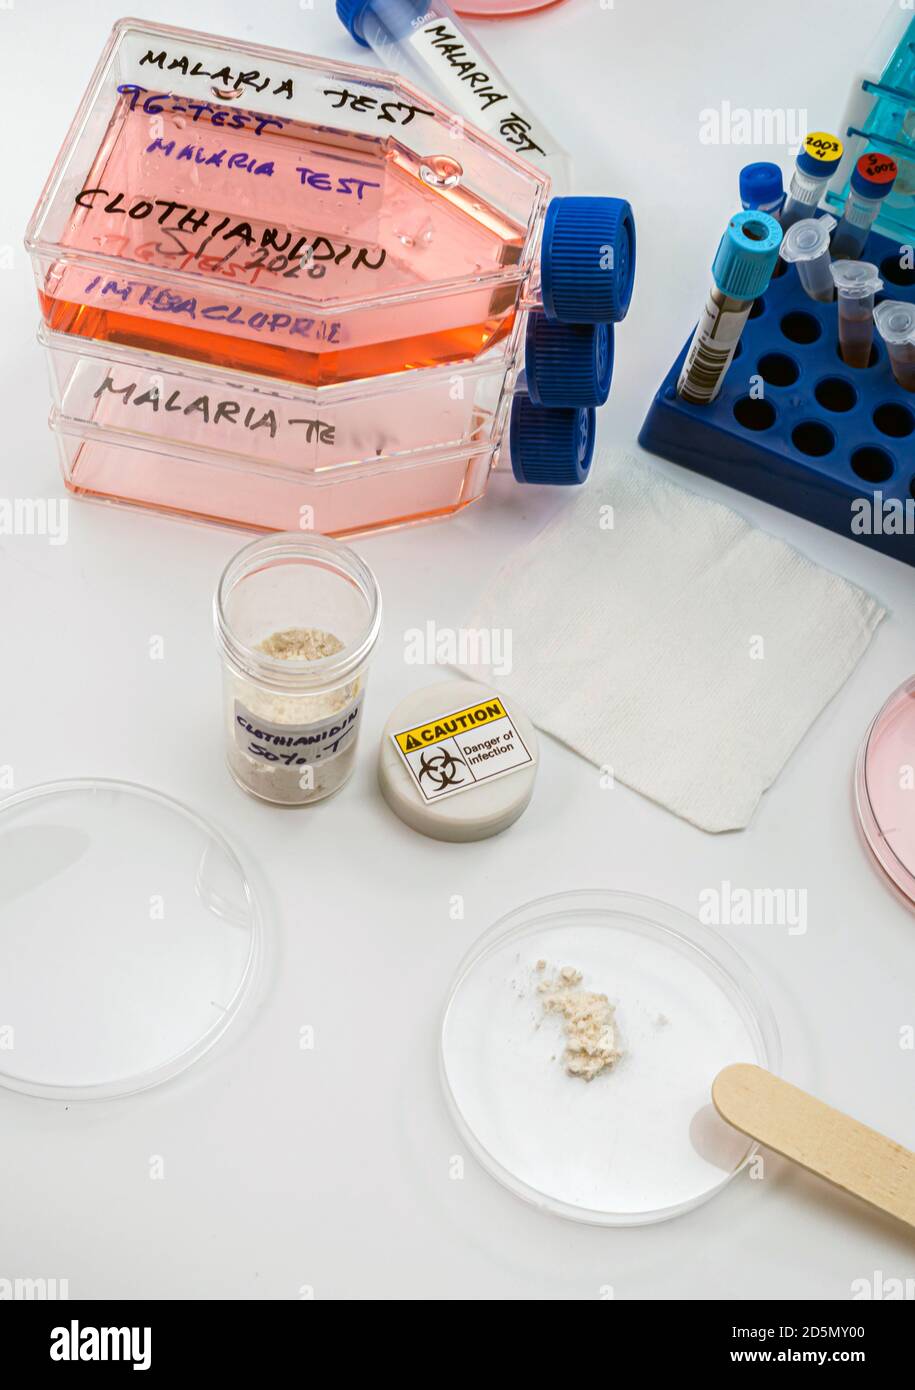 Laborforschung über das Insektizid Clothianidin, Ursache der Malariaerkrankung durch die Anopheles Familie der Malariamücken, konzeptuelles Bild Stockfoto